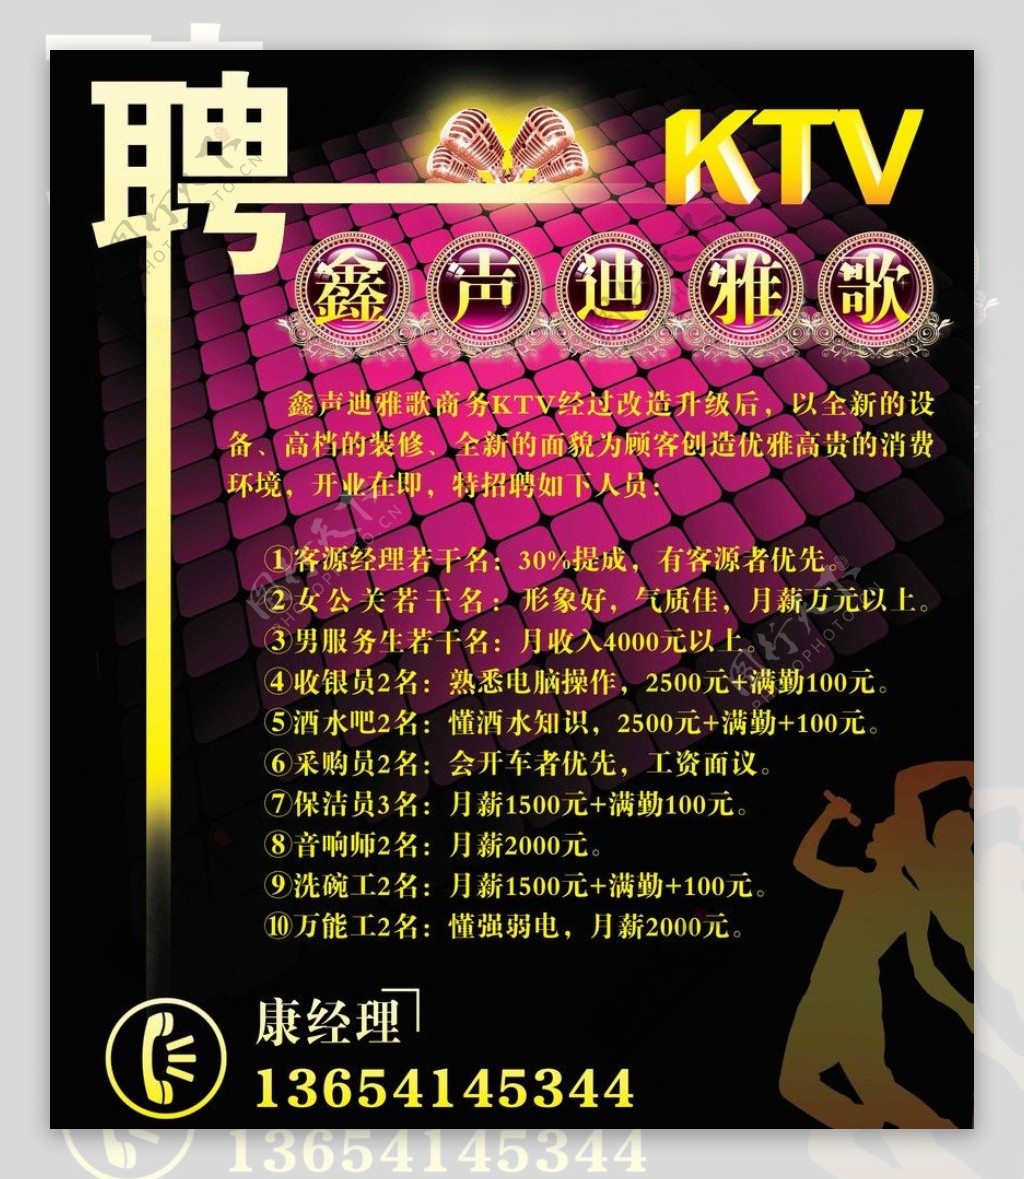 KTV招聘广告图片